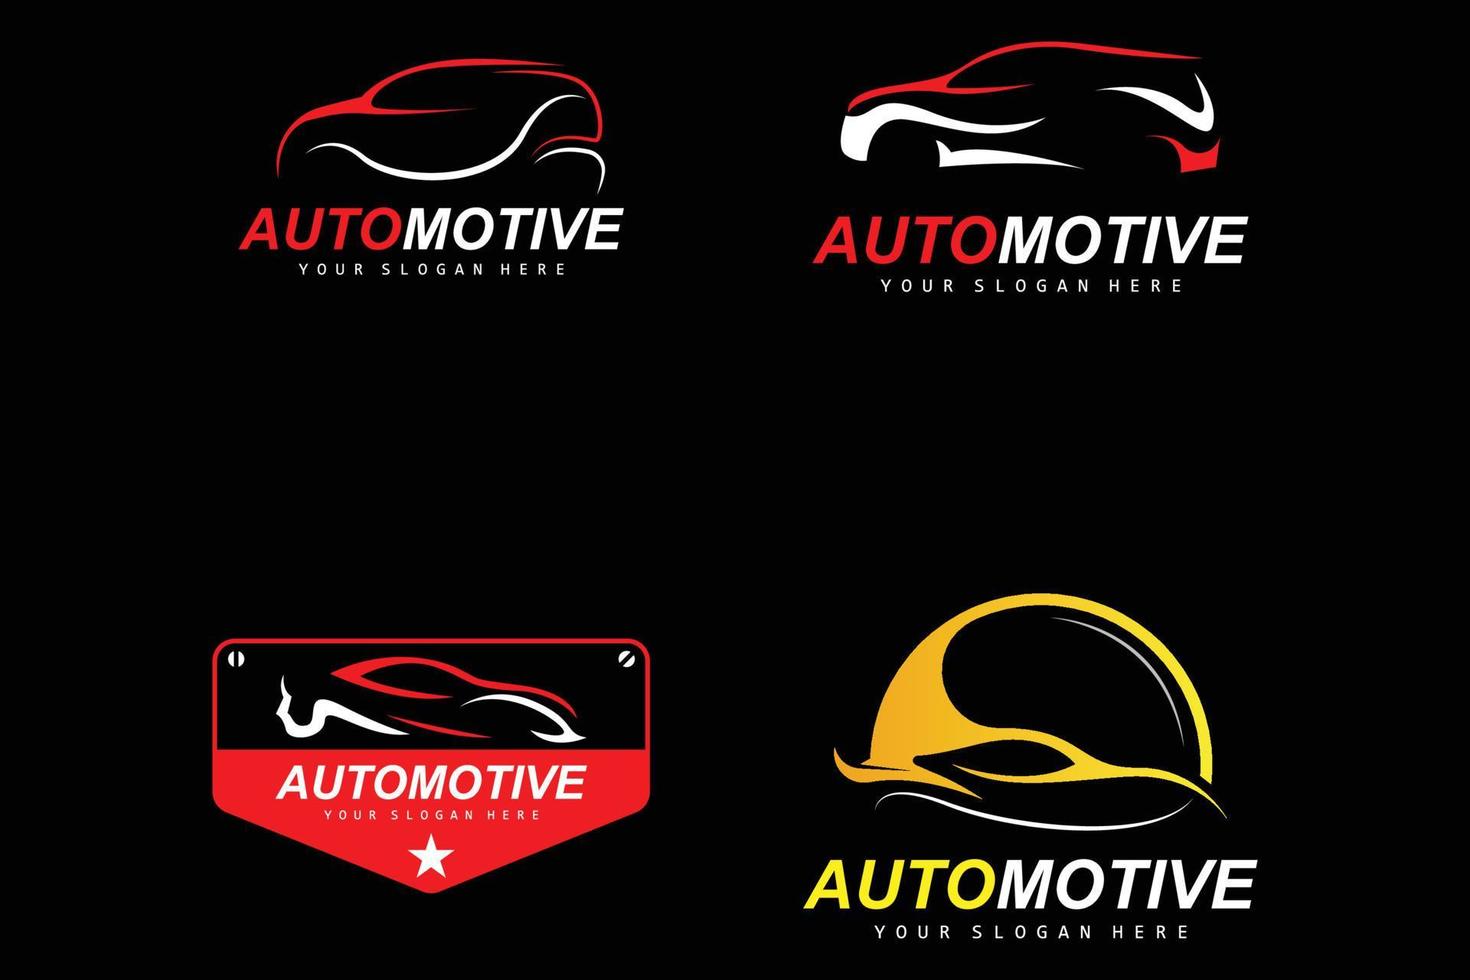 logotipo de camión, vector de reparación de automóviles, diseño de marca de garaje de reparación, cuidado de automóviles, repuestos de automóviles